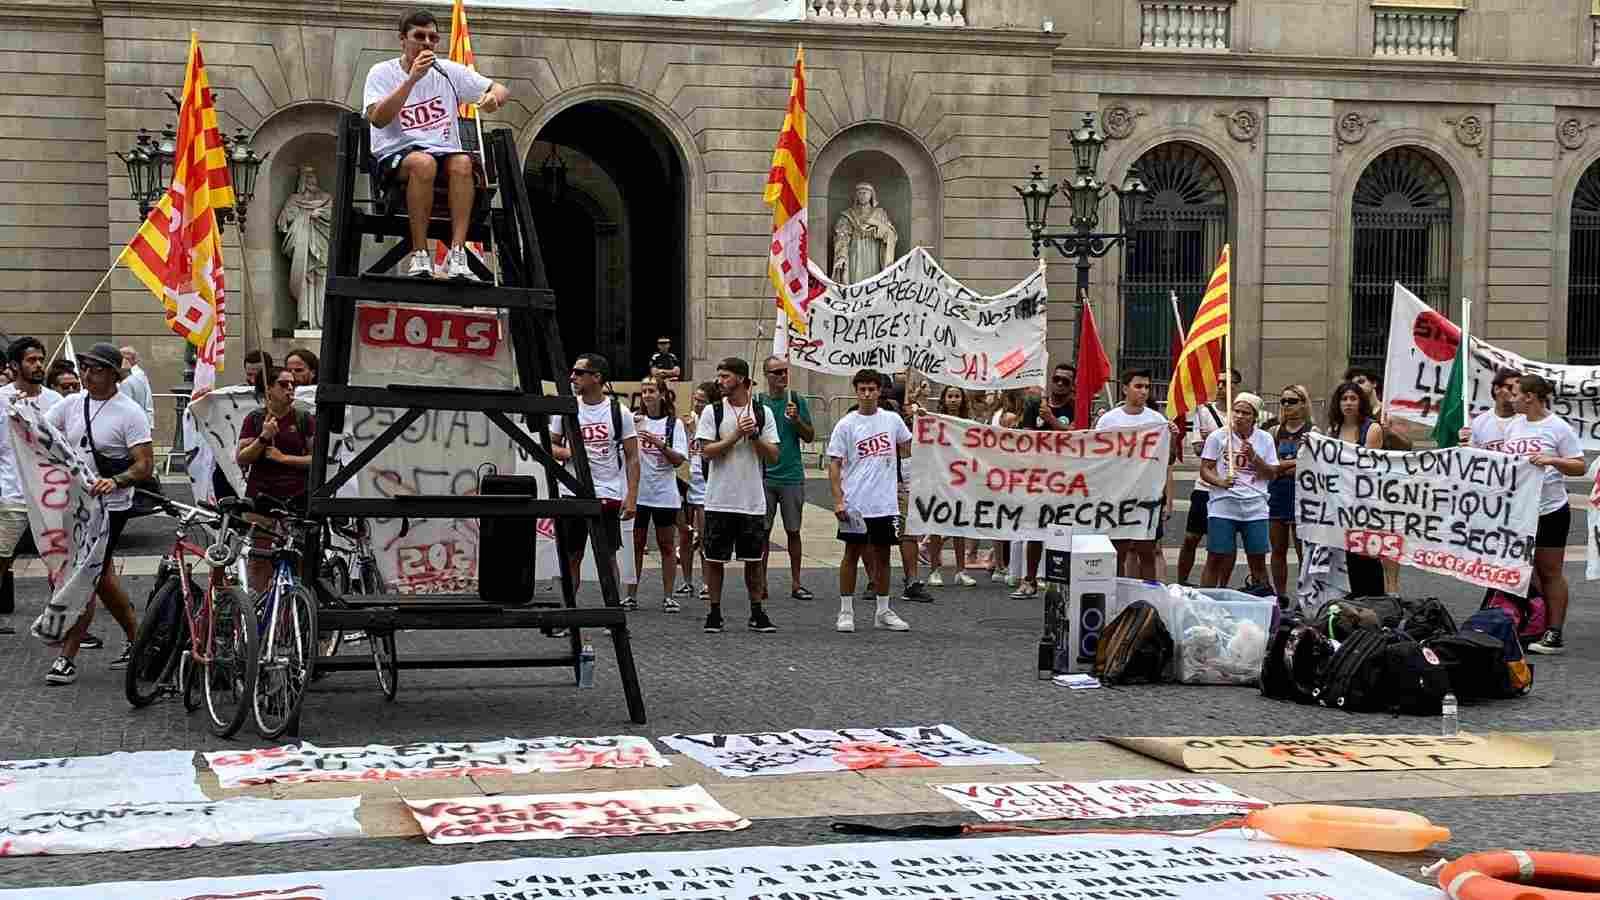 Els socorristes catalans, convocats per UGT, es concentren a la plaça Sant Jaume de Barcelona